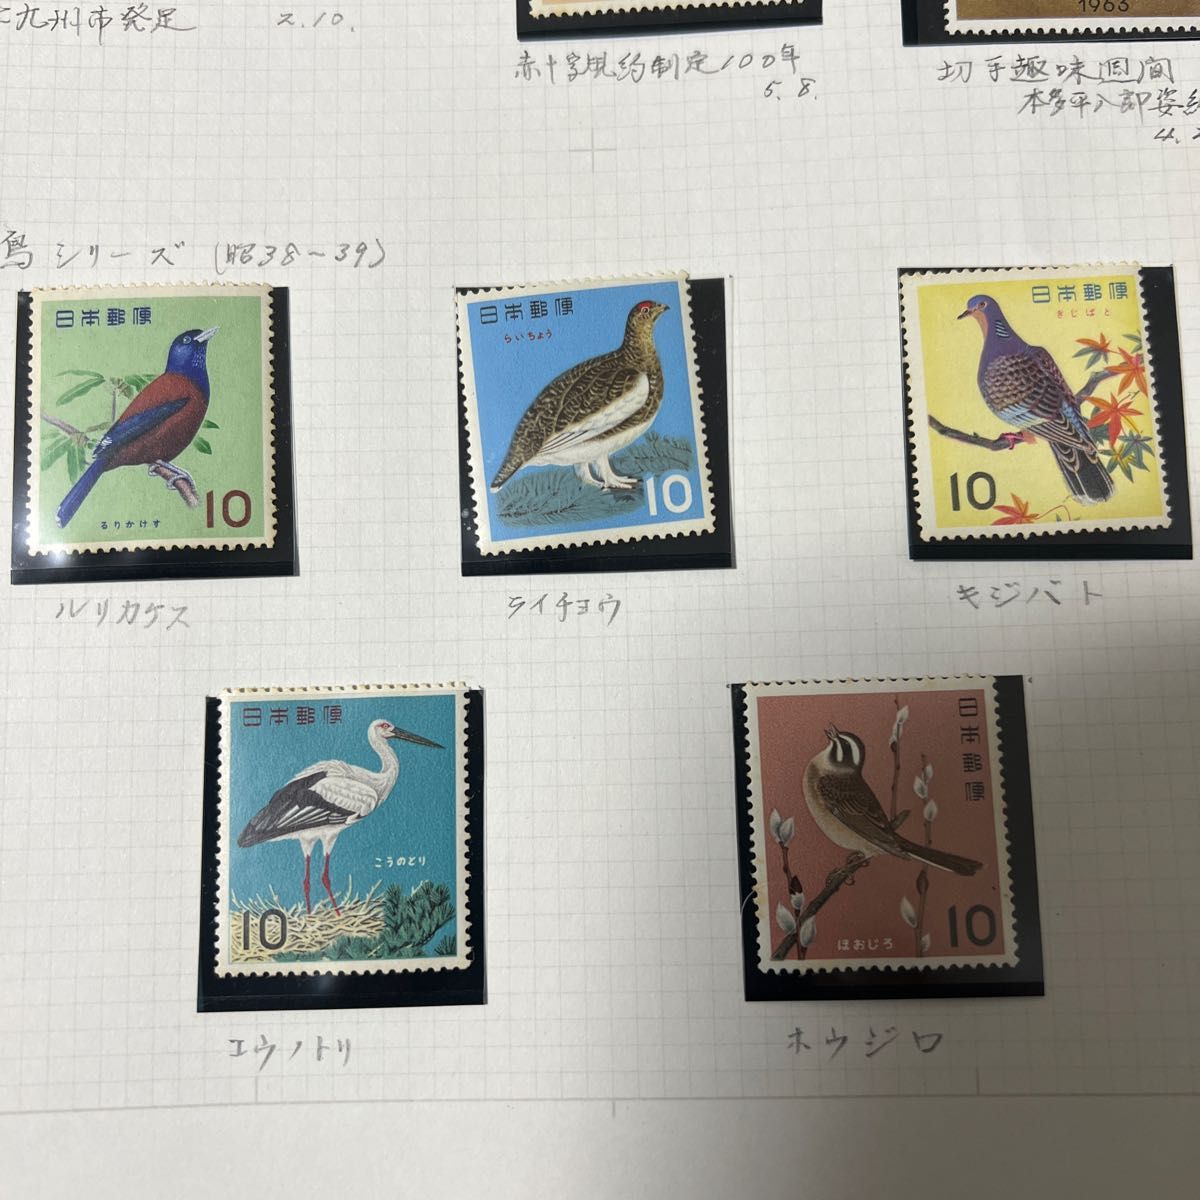 日本郵便記念切手  切手趣味週間 1963年「千姫」鳥シリーズ切手飢餓救運動 赤十字100年記念切手記念切手　北九州市発足記念　